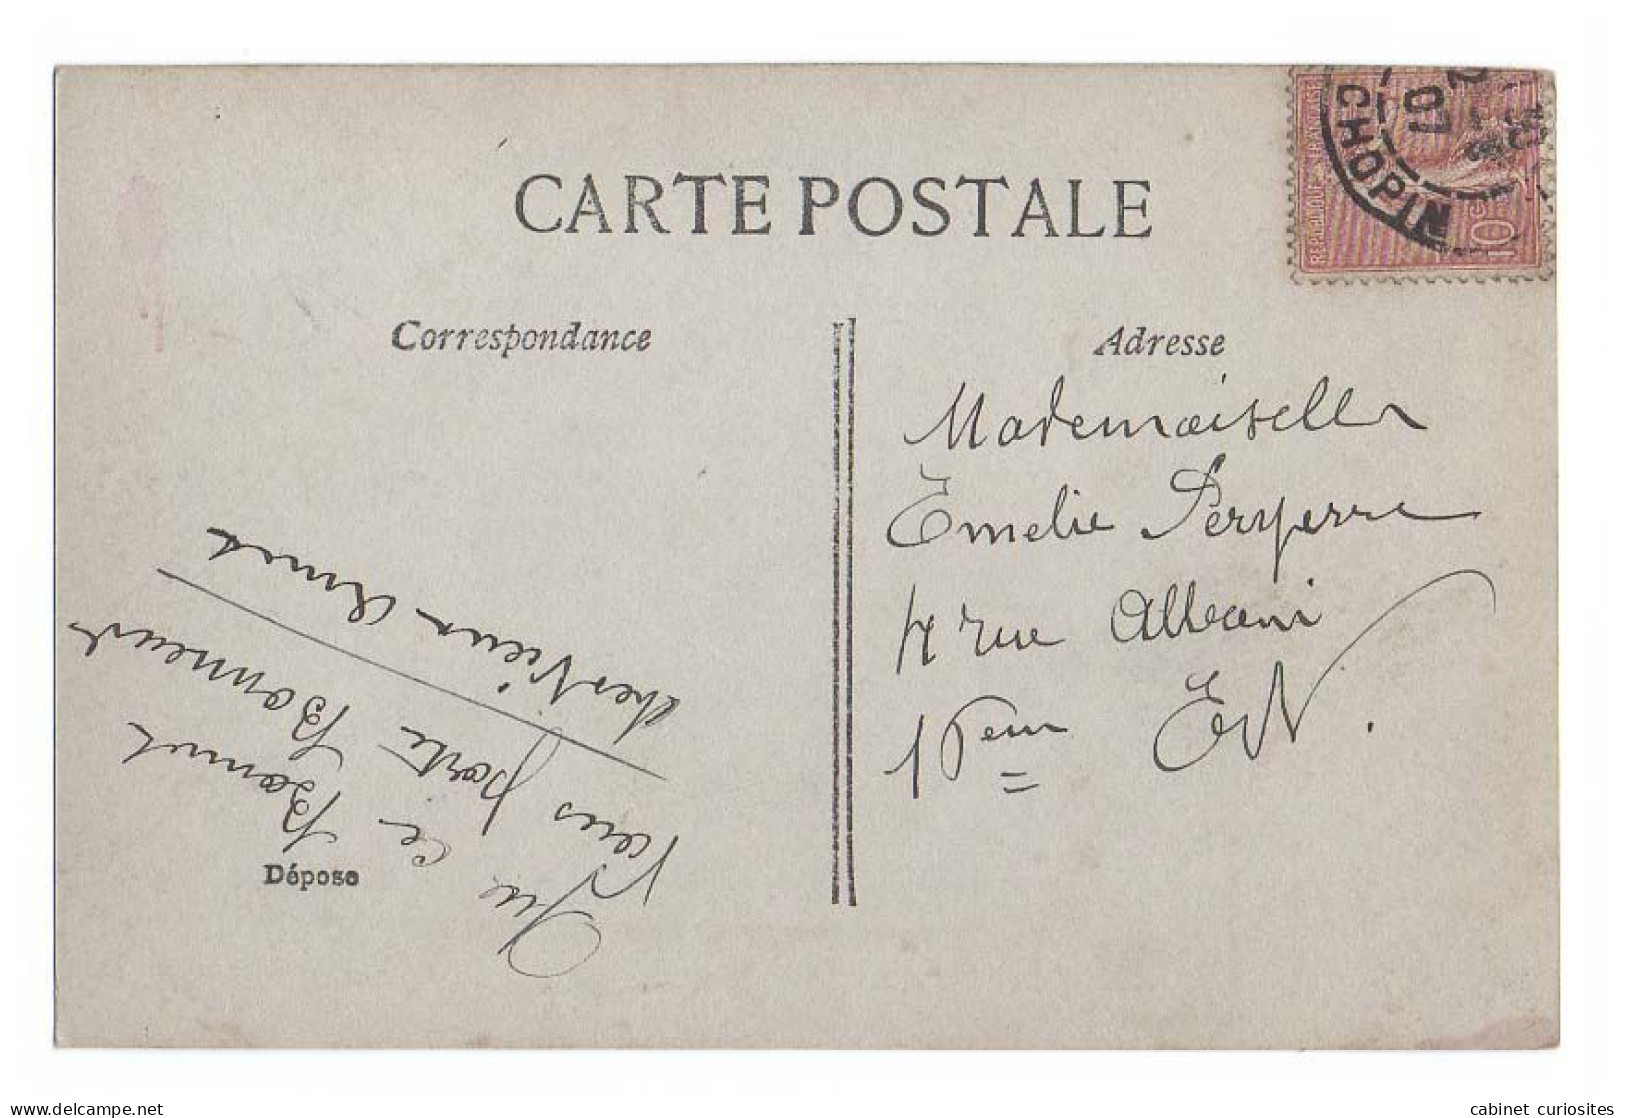 SAINTE CATHERINE - Jeune Femme Bien En Chair - 1907 - Colorisée - Chapeau - Ste Catherine - Animée - Frauen